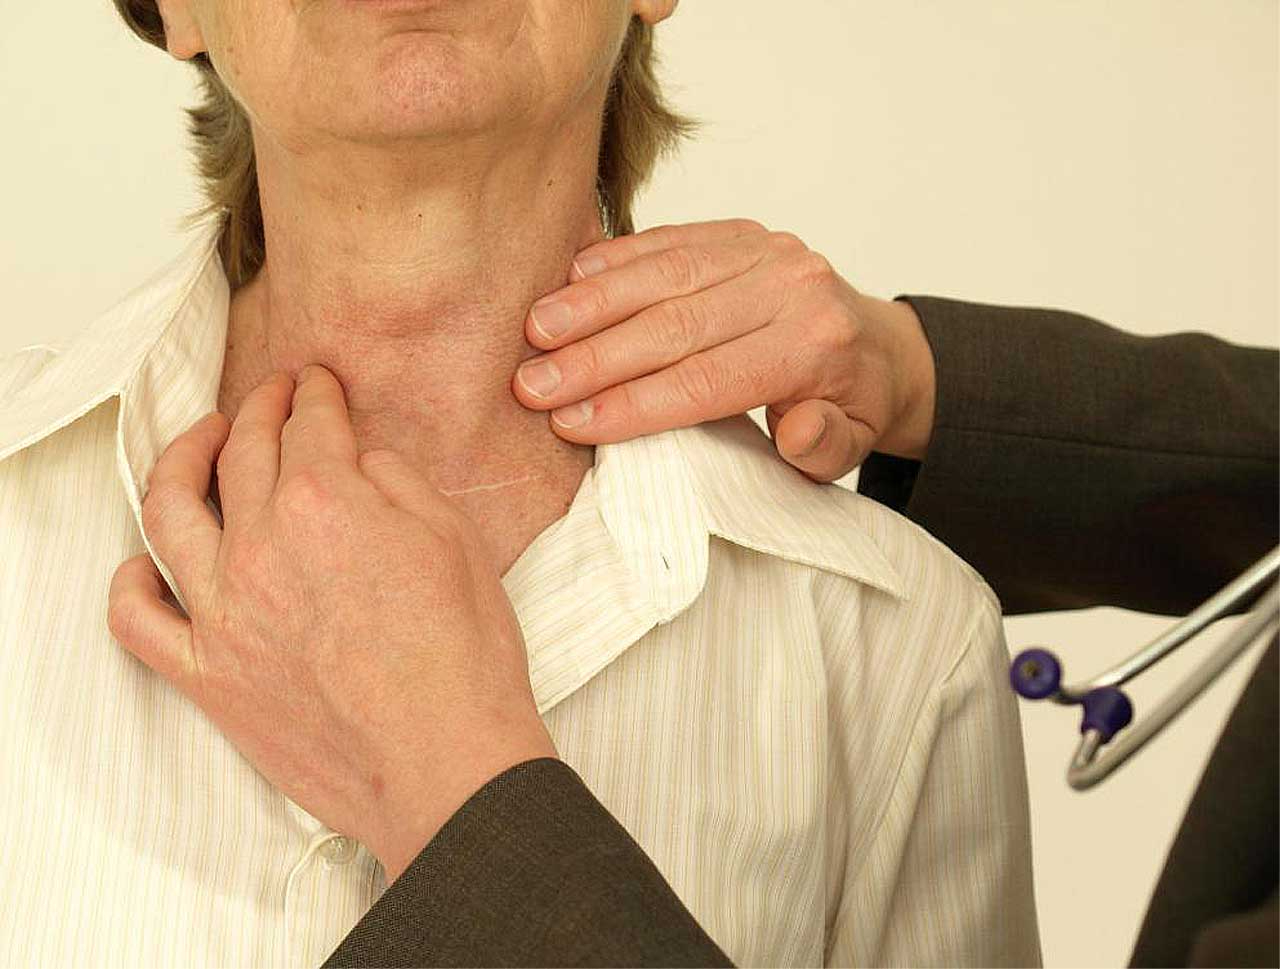 Повышение железа заболевания. РПК зитовидной железы симпомы. Заболевания щитовидной железы. Ракщитовиднойжелезысимтомы. Симптомы.рааащитовидной желрзы.